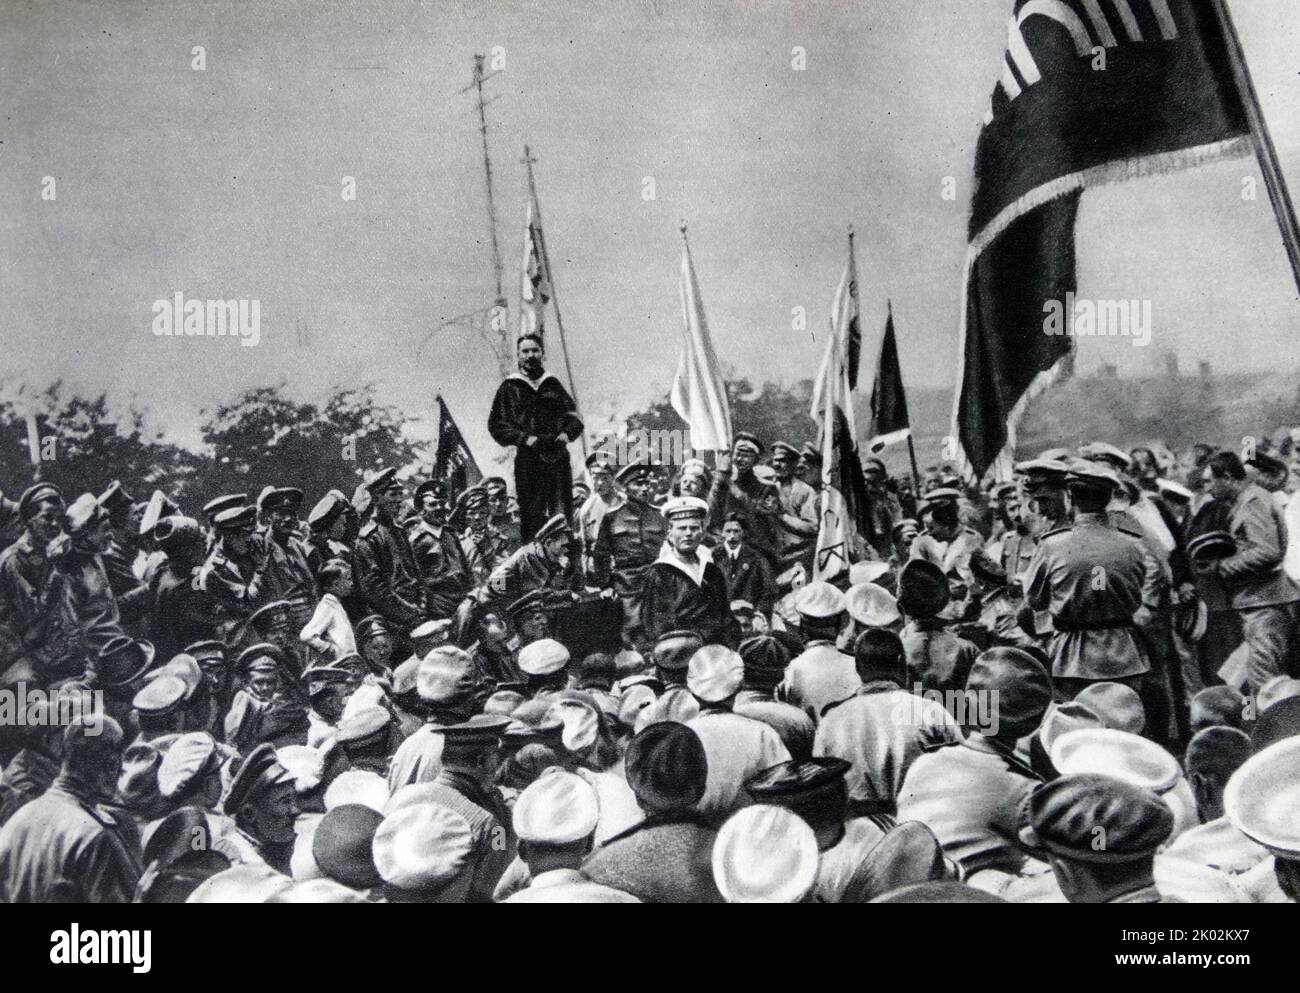 Lors d'un rassemblement à Sébastopol, les marins bolcheviques de la flotte Baltique pressent les marins et les soldats de la garnison de Sébastopol de se battre pour le pouvoir des Soviétiques. Banque D'Images